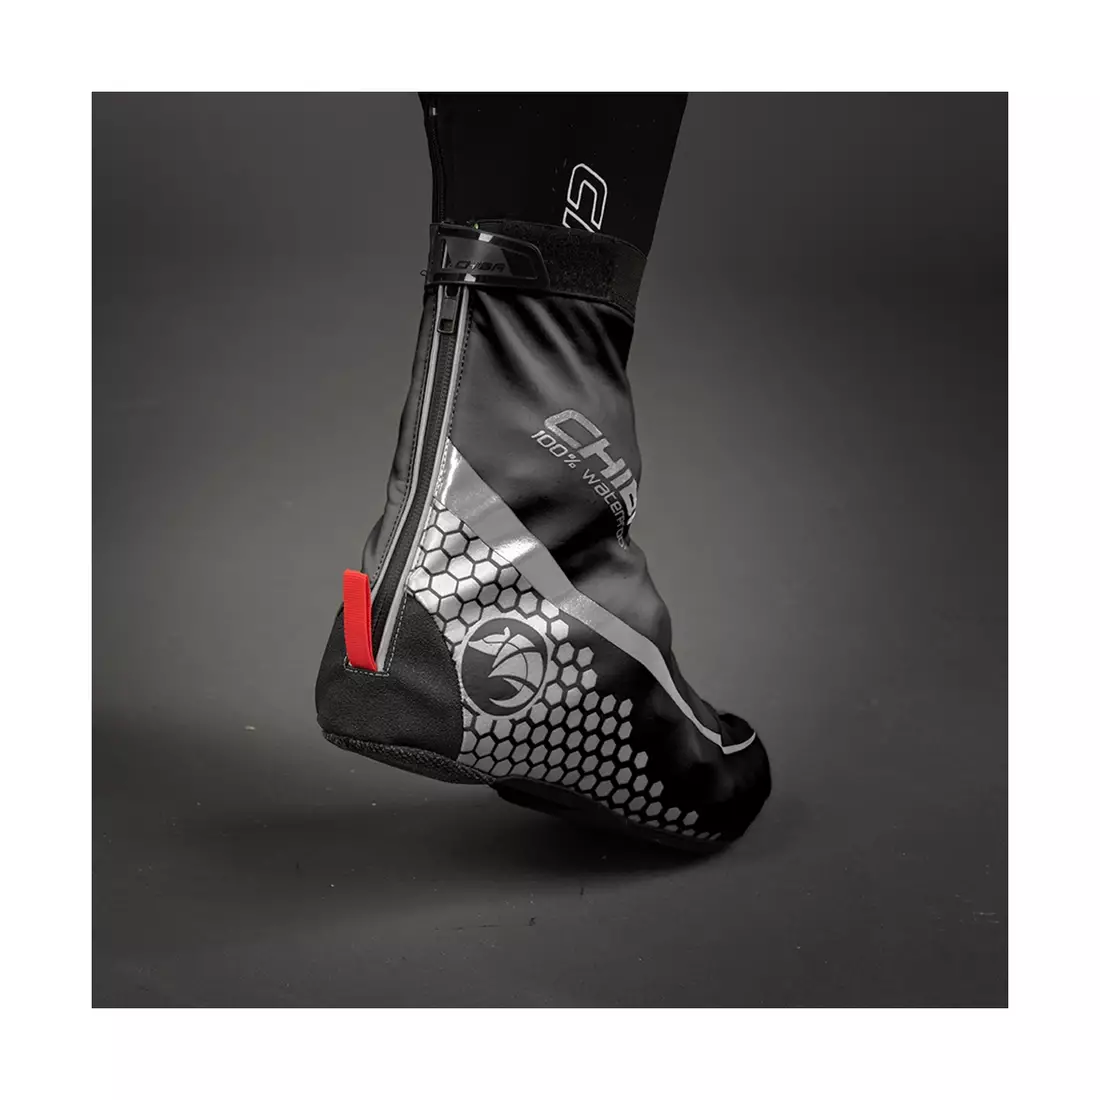 CHIBA RACE UBERSCHUH esővédő kerékpáros cipőkhöz, fekete 31479 